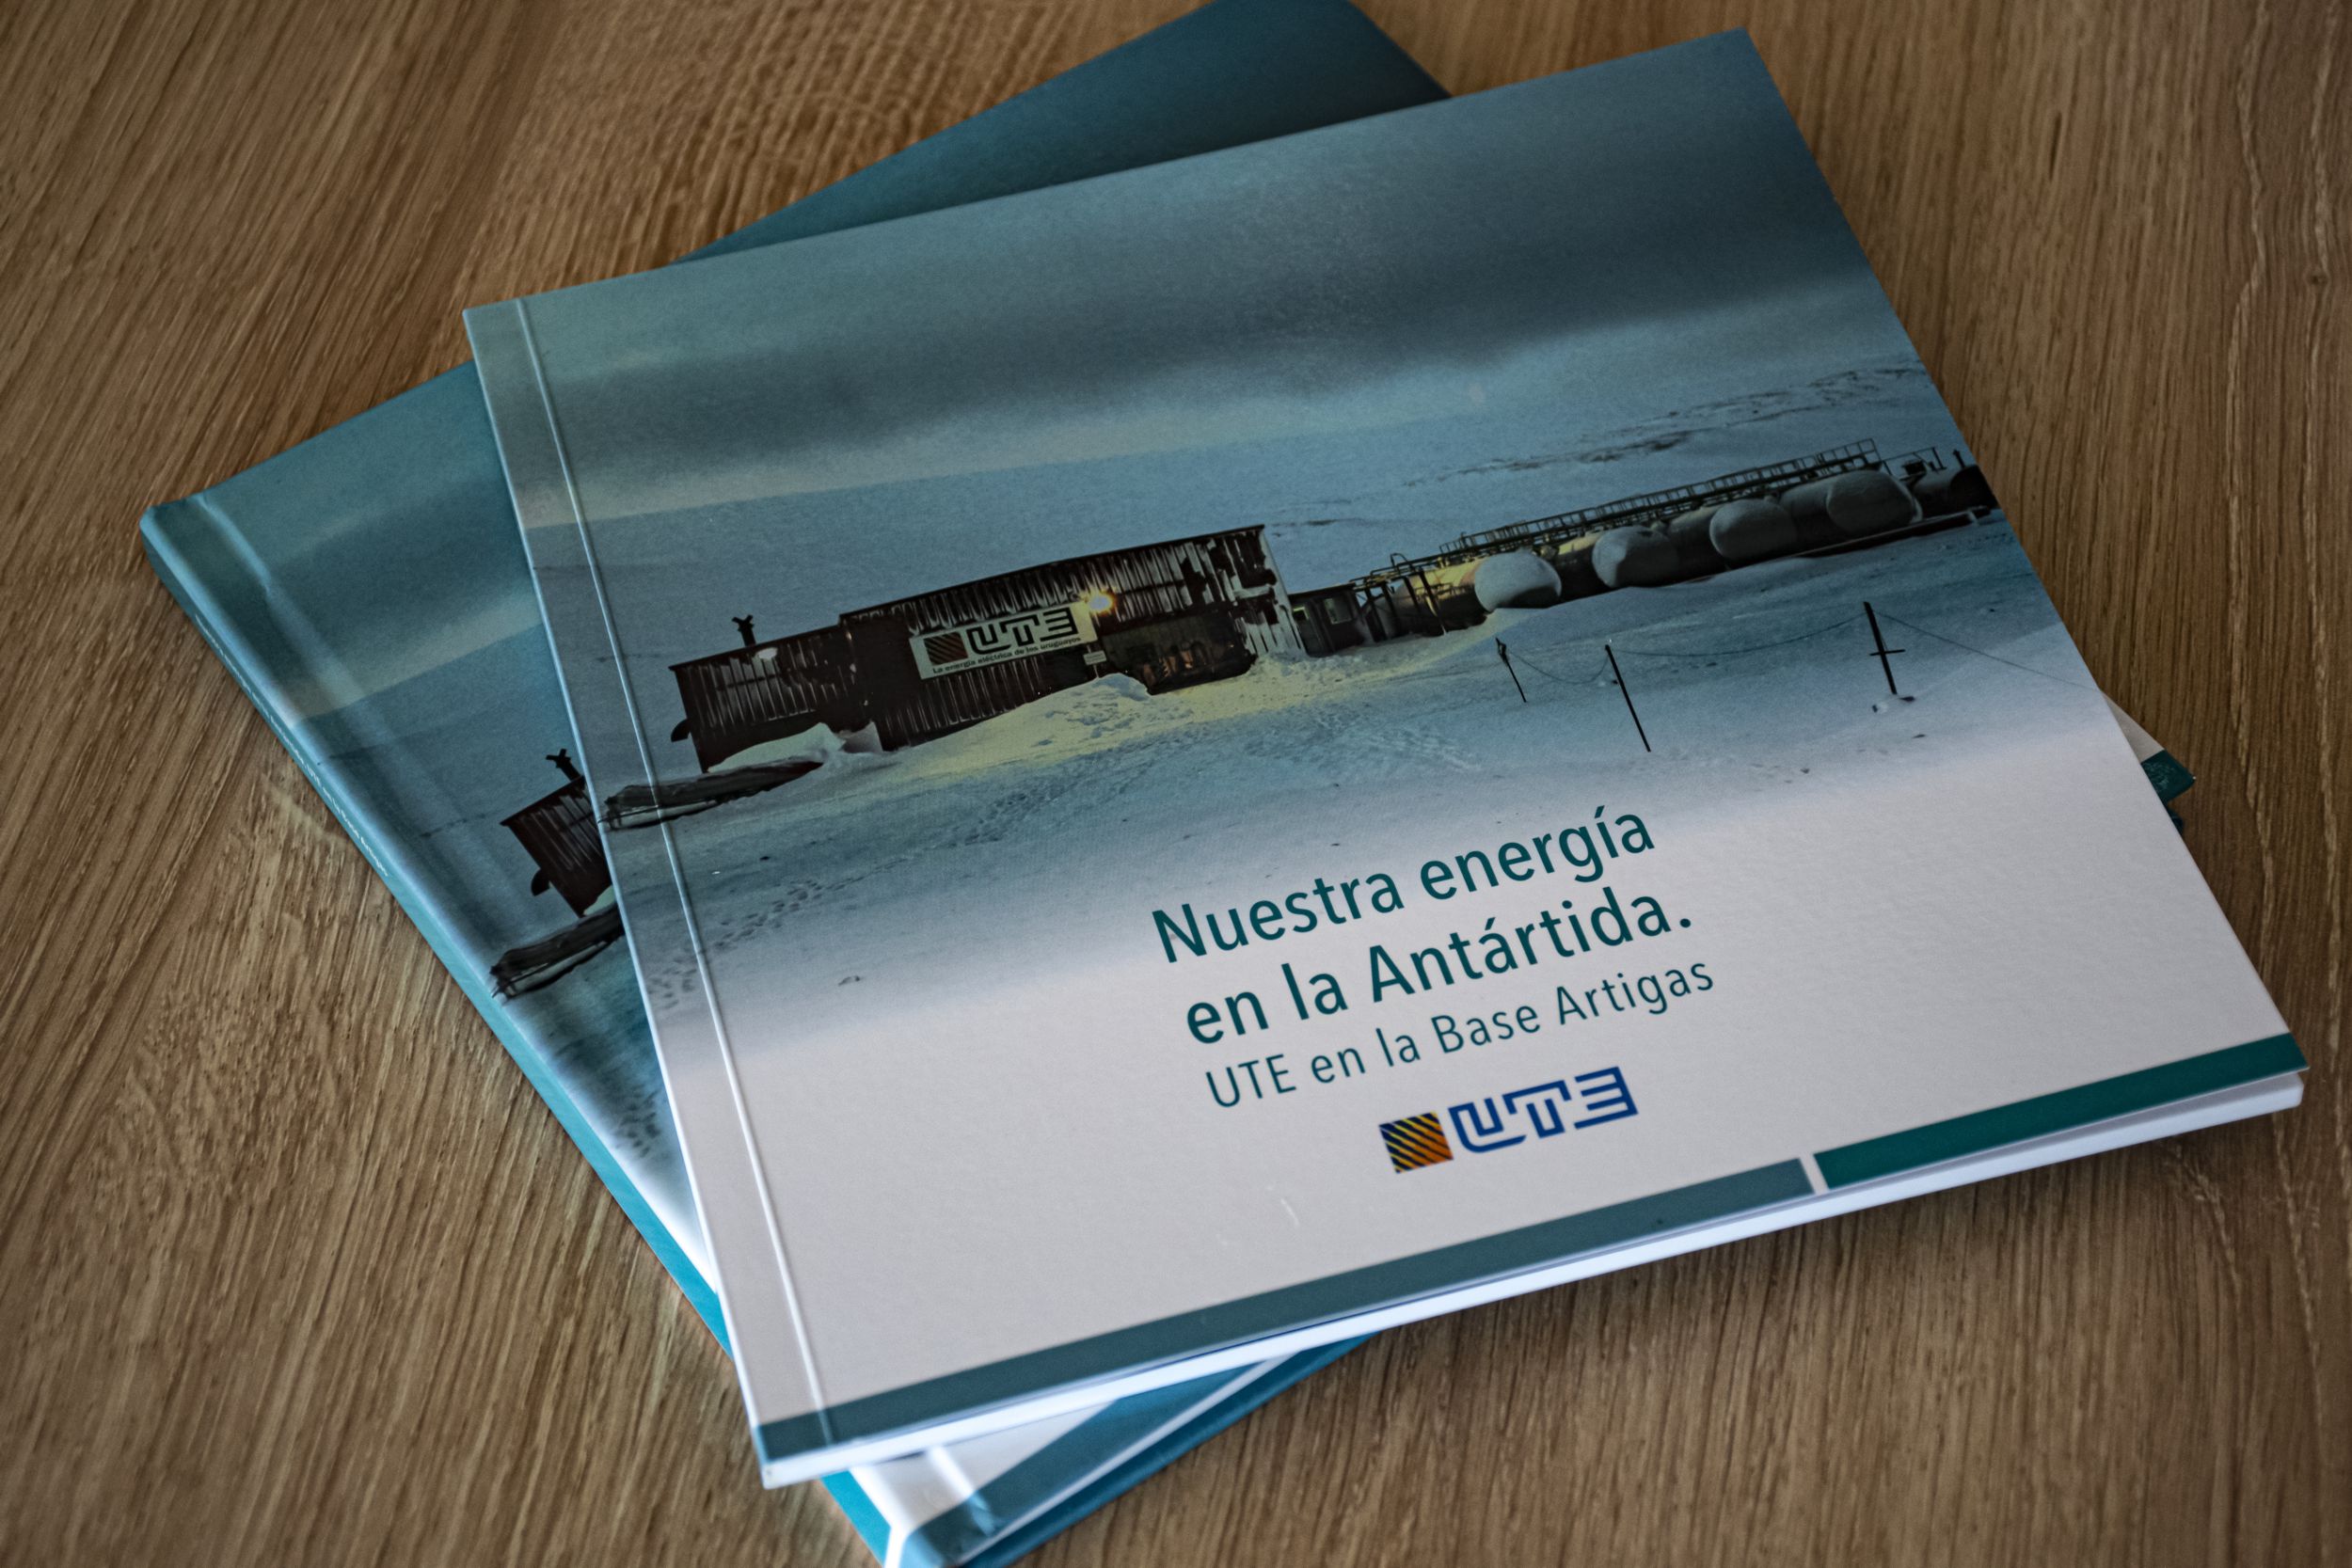 Nuestra energía en la Antártida: UTE en la Base Artigas